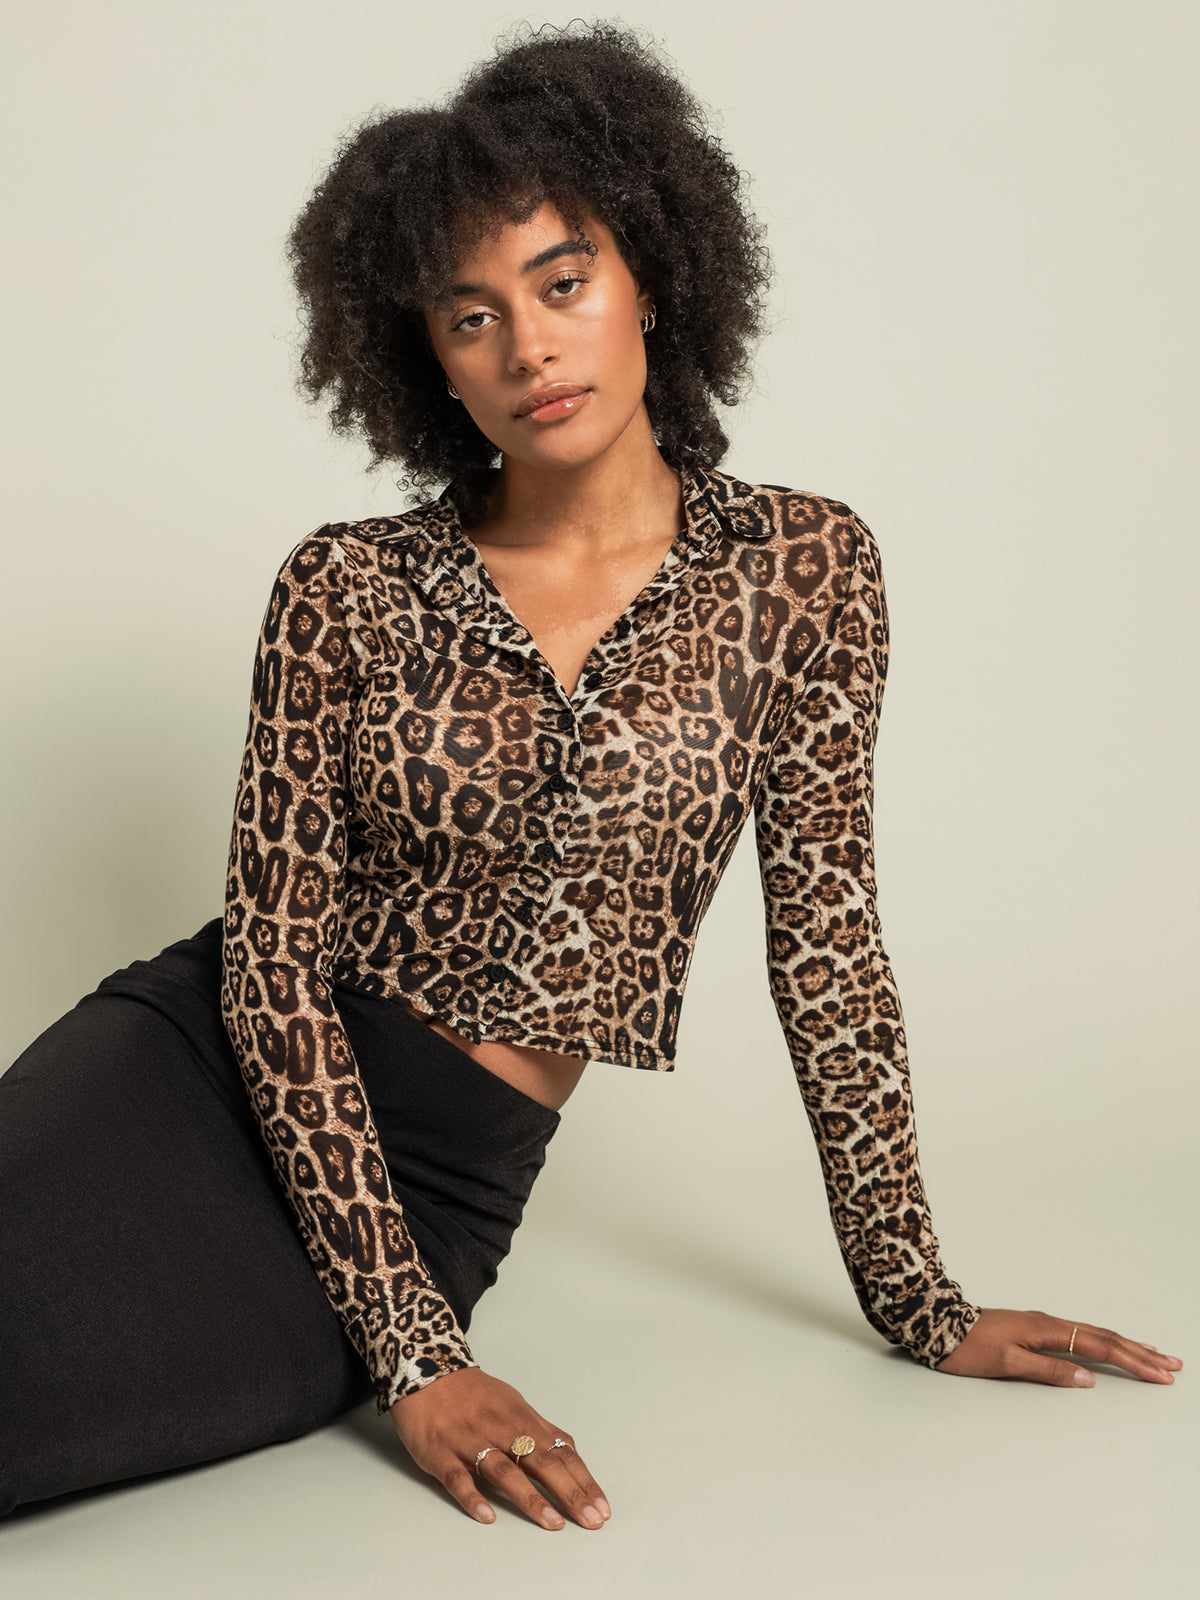 Samara Sheer Shirt in Leopard Print